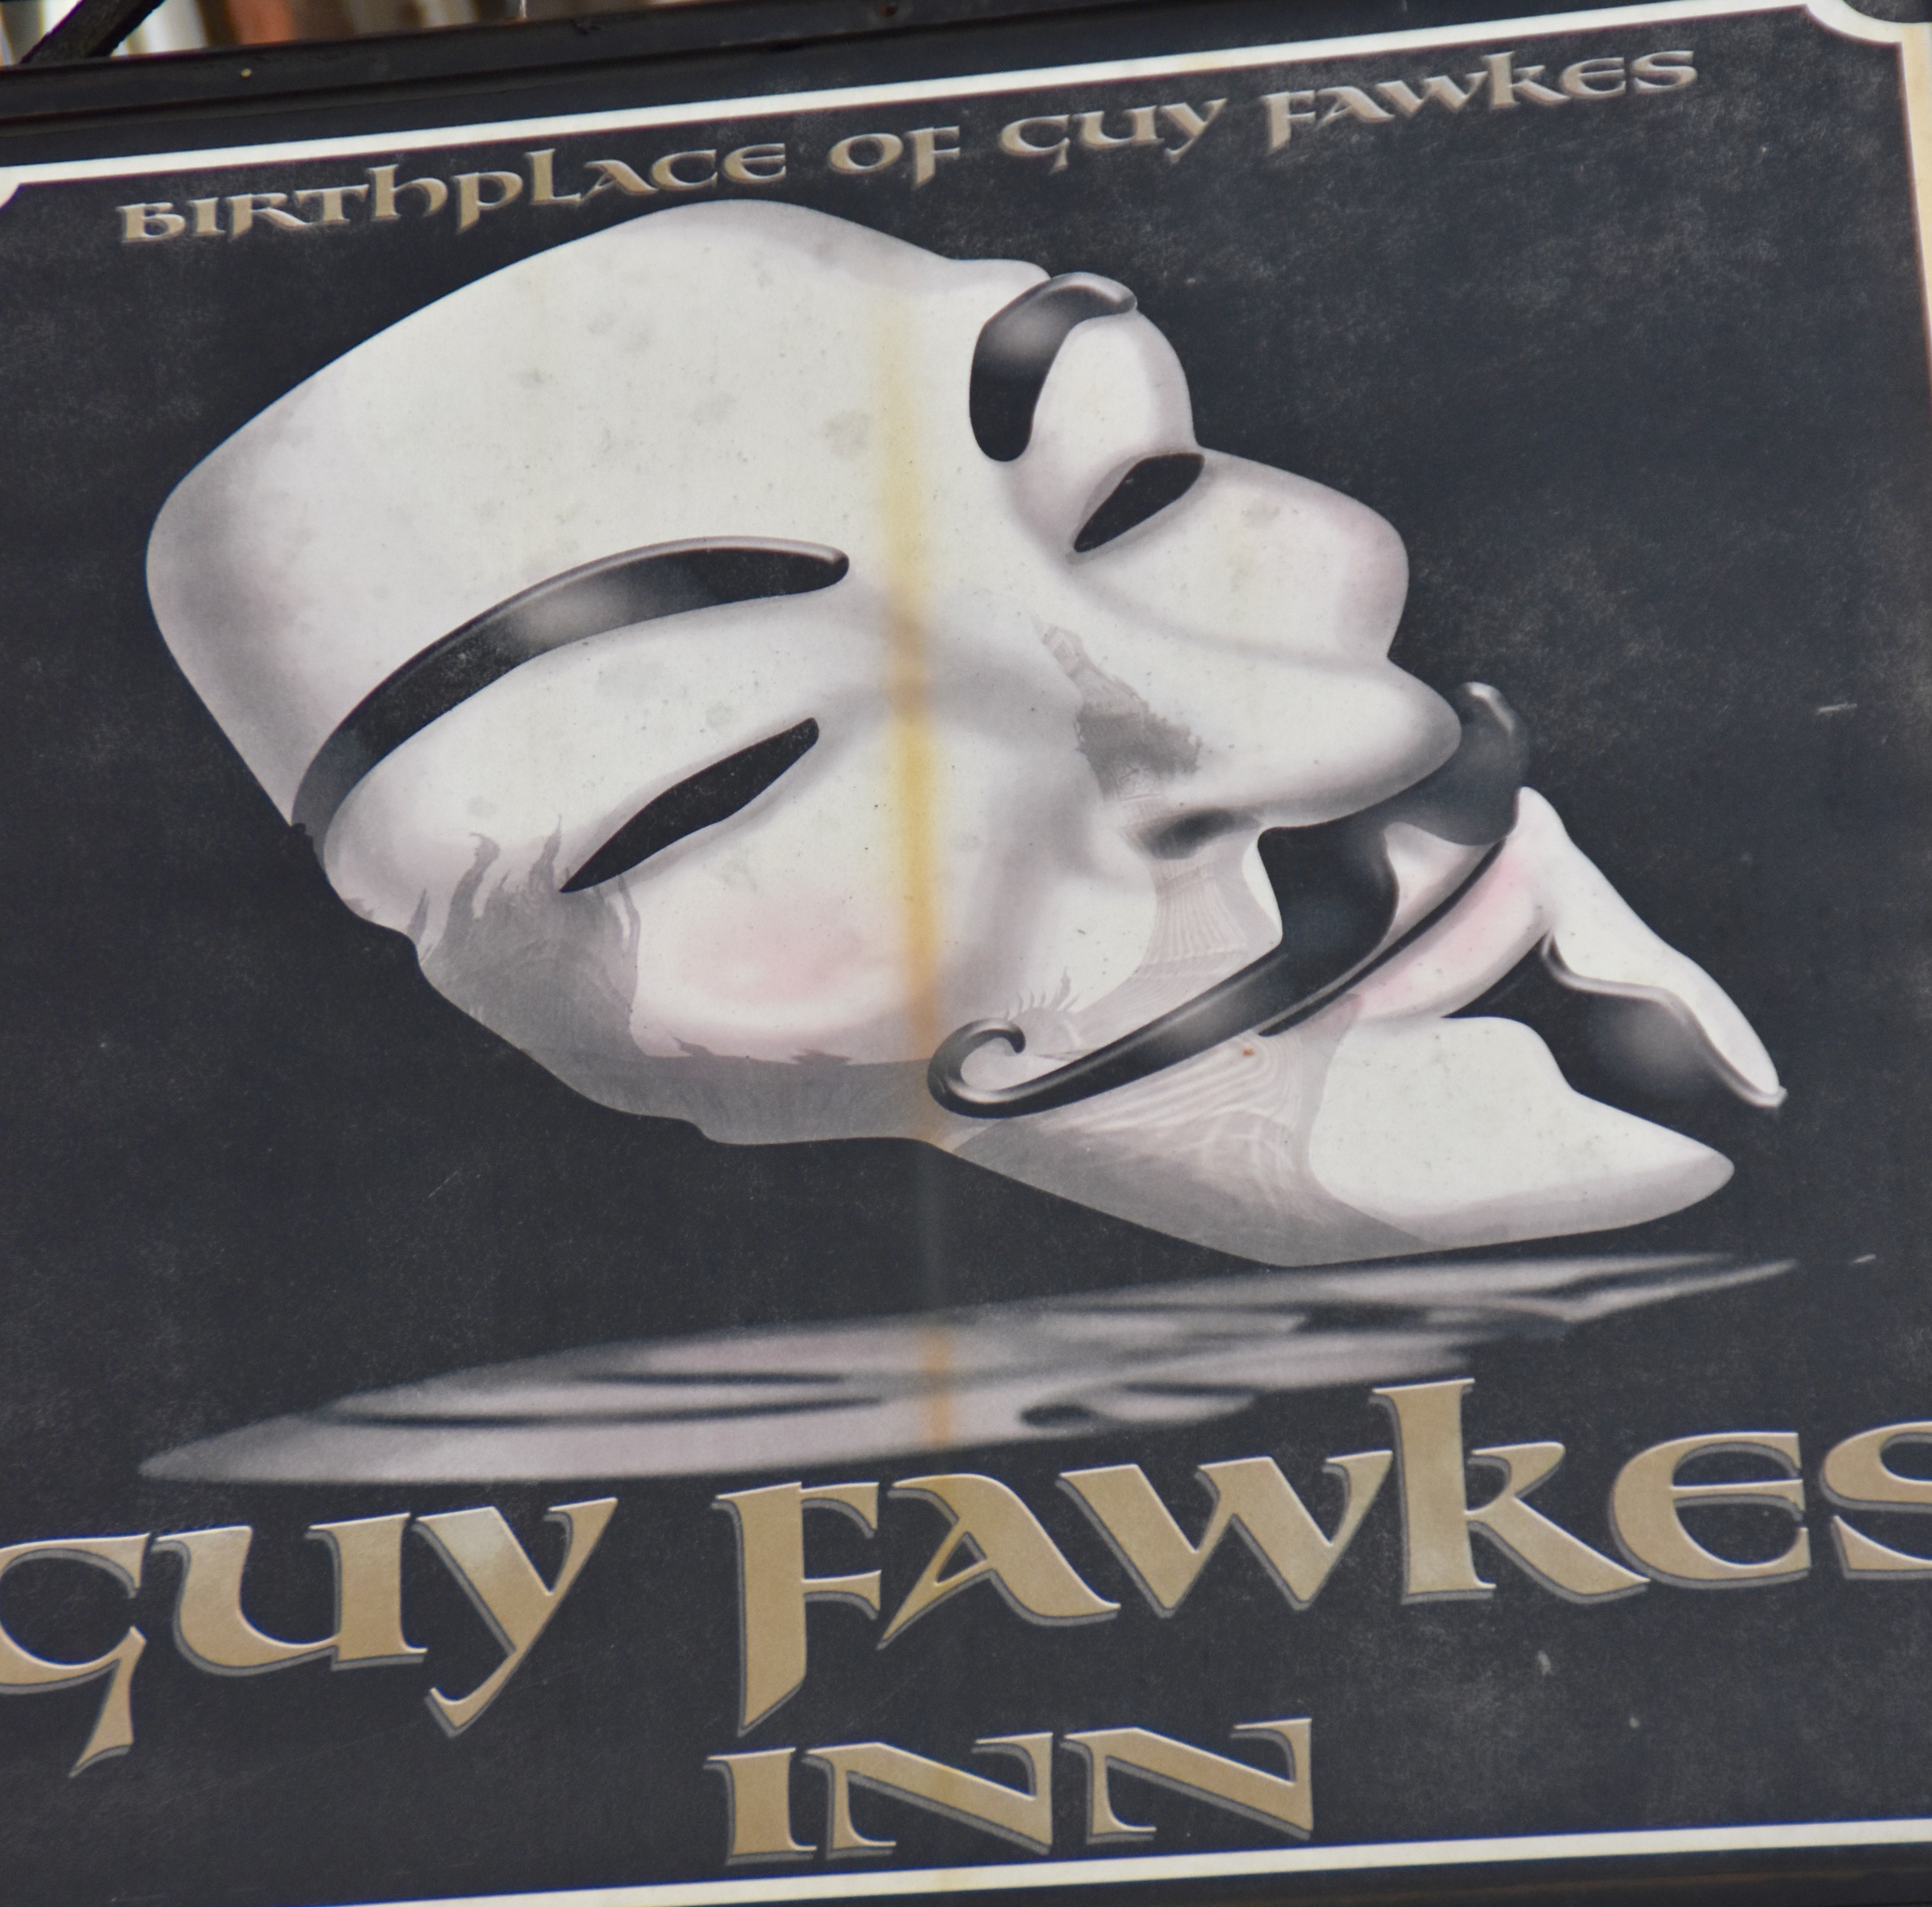 Guy Fawkes Inn Sign, York